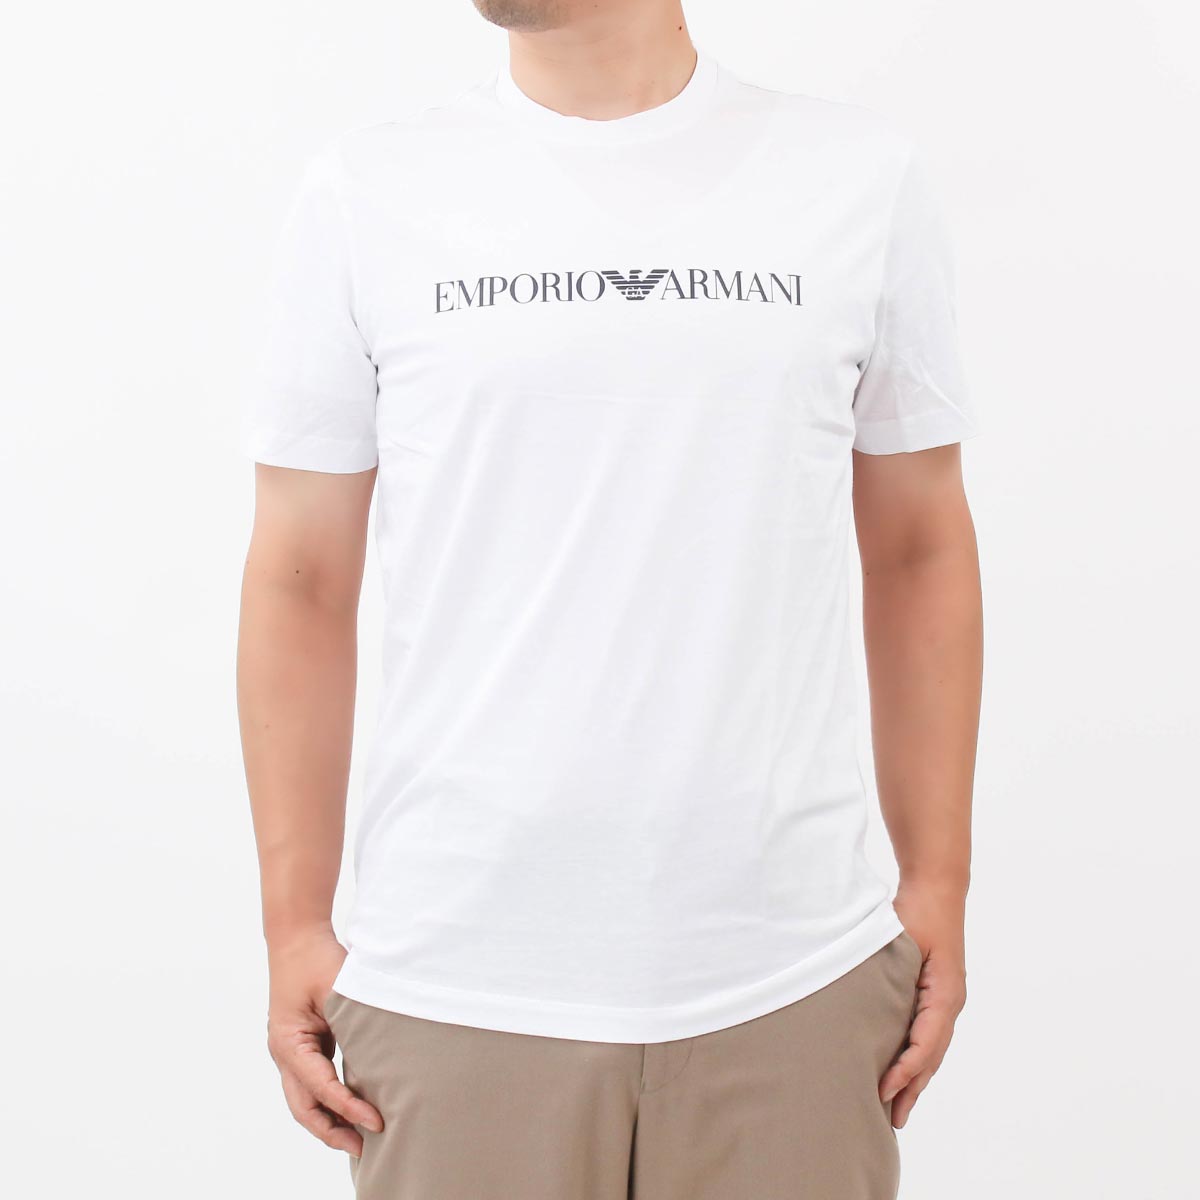 EMPORIO ARMANI Tシャツピマコットン オーバーサイズイーグル XL